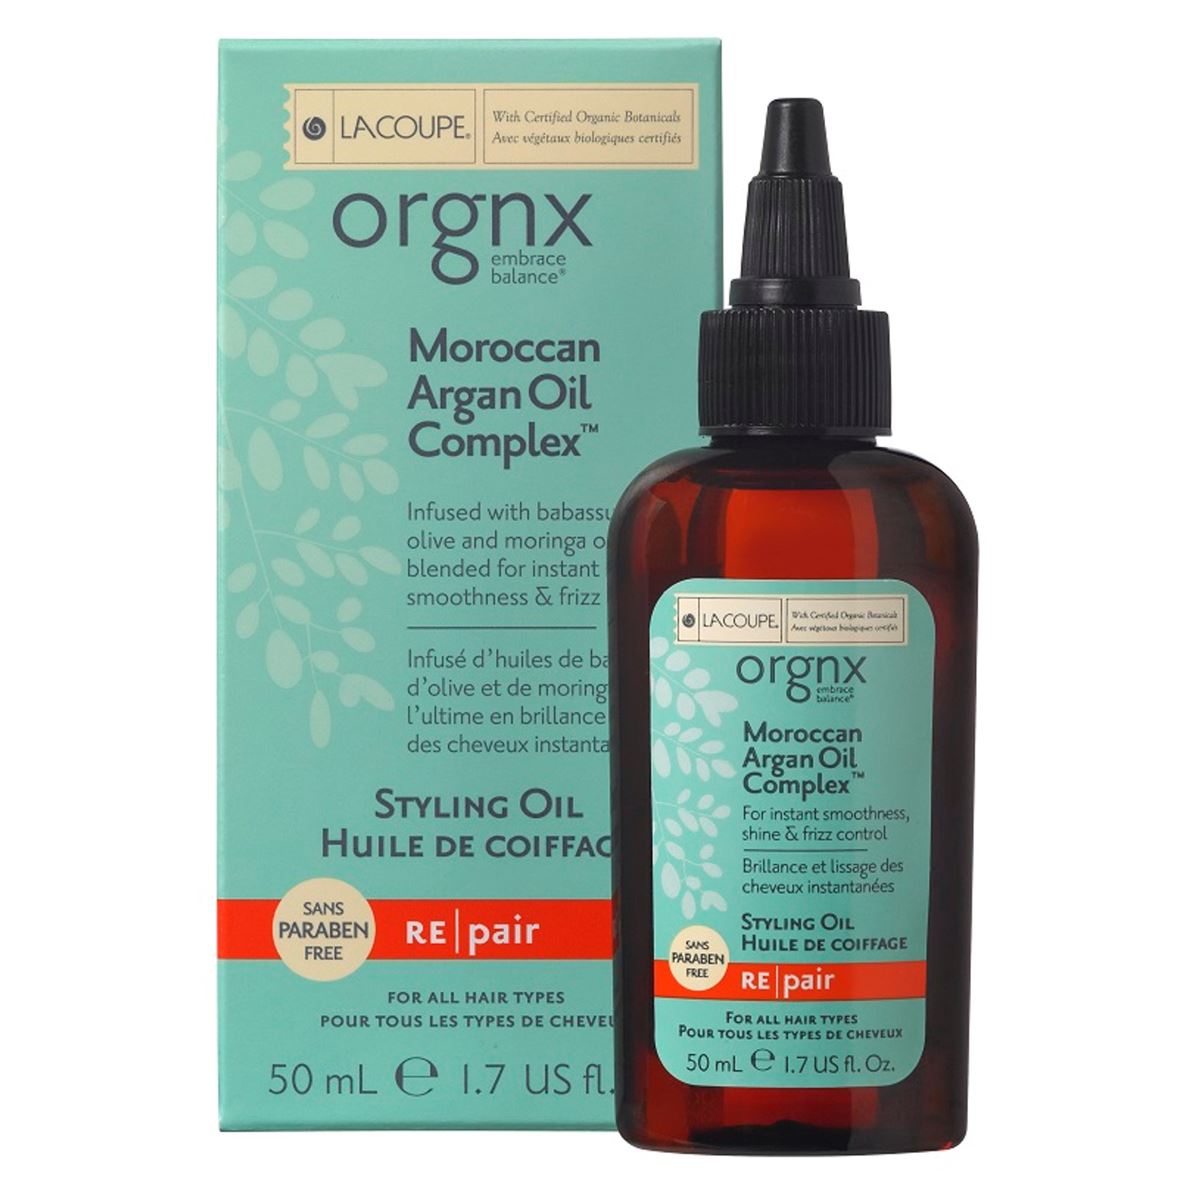 Moracan Argan Oil Aceite Estilizador Lc Orgnx